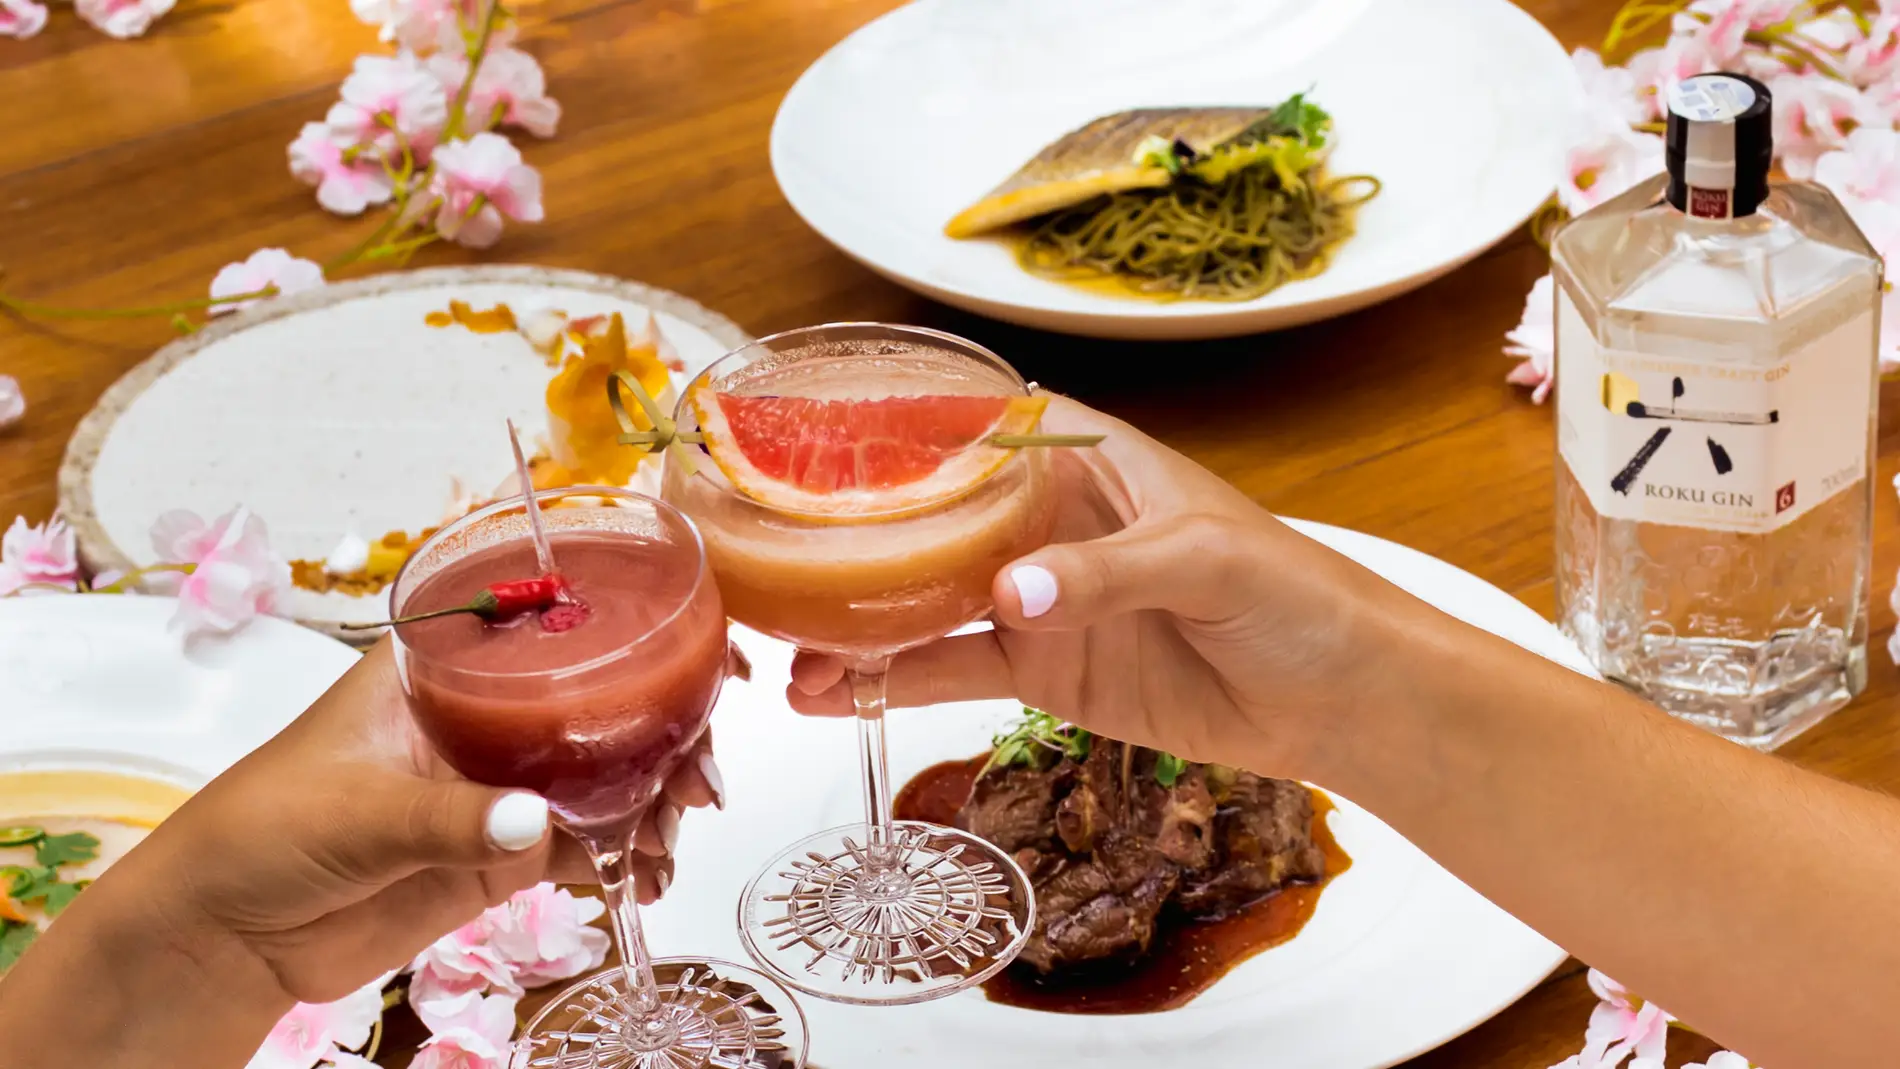 Nobu Hotel Marbella presenta el lanzamiento del Nobu Bar de la mano de Roku Gin